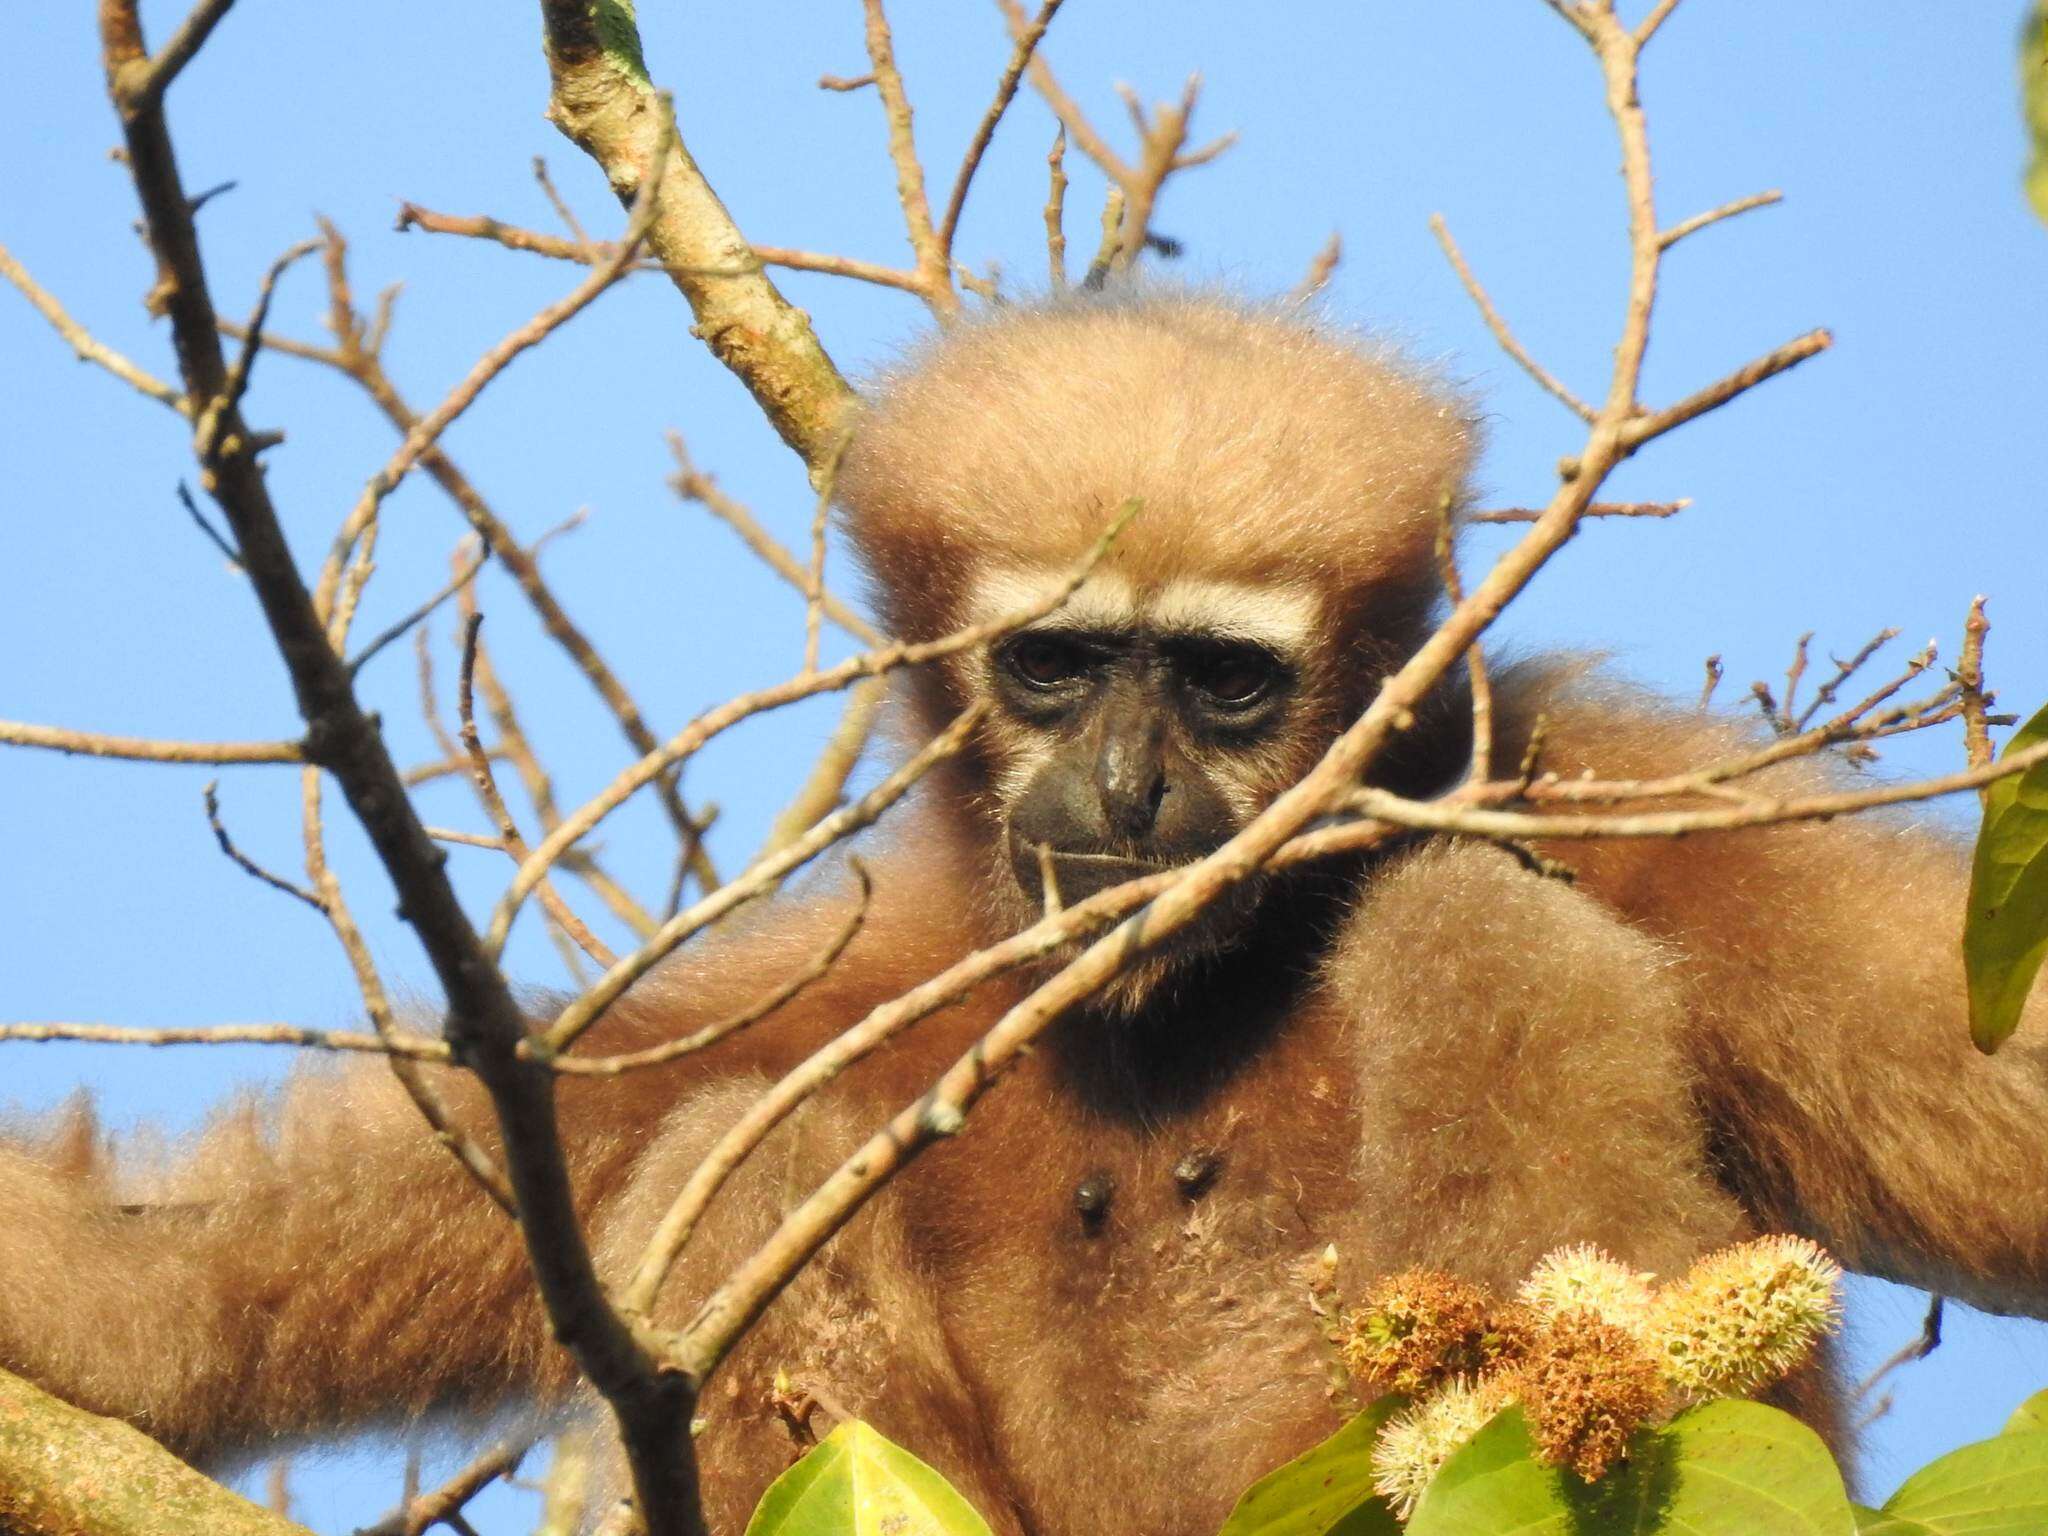 Image of Hoolock Gibbon